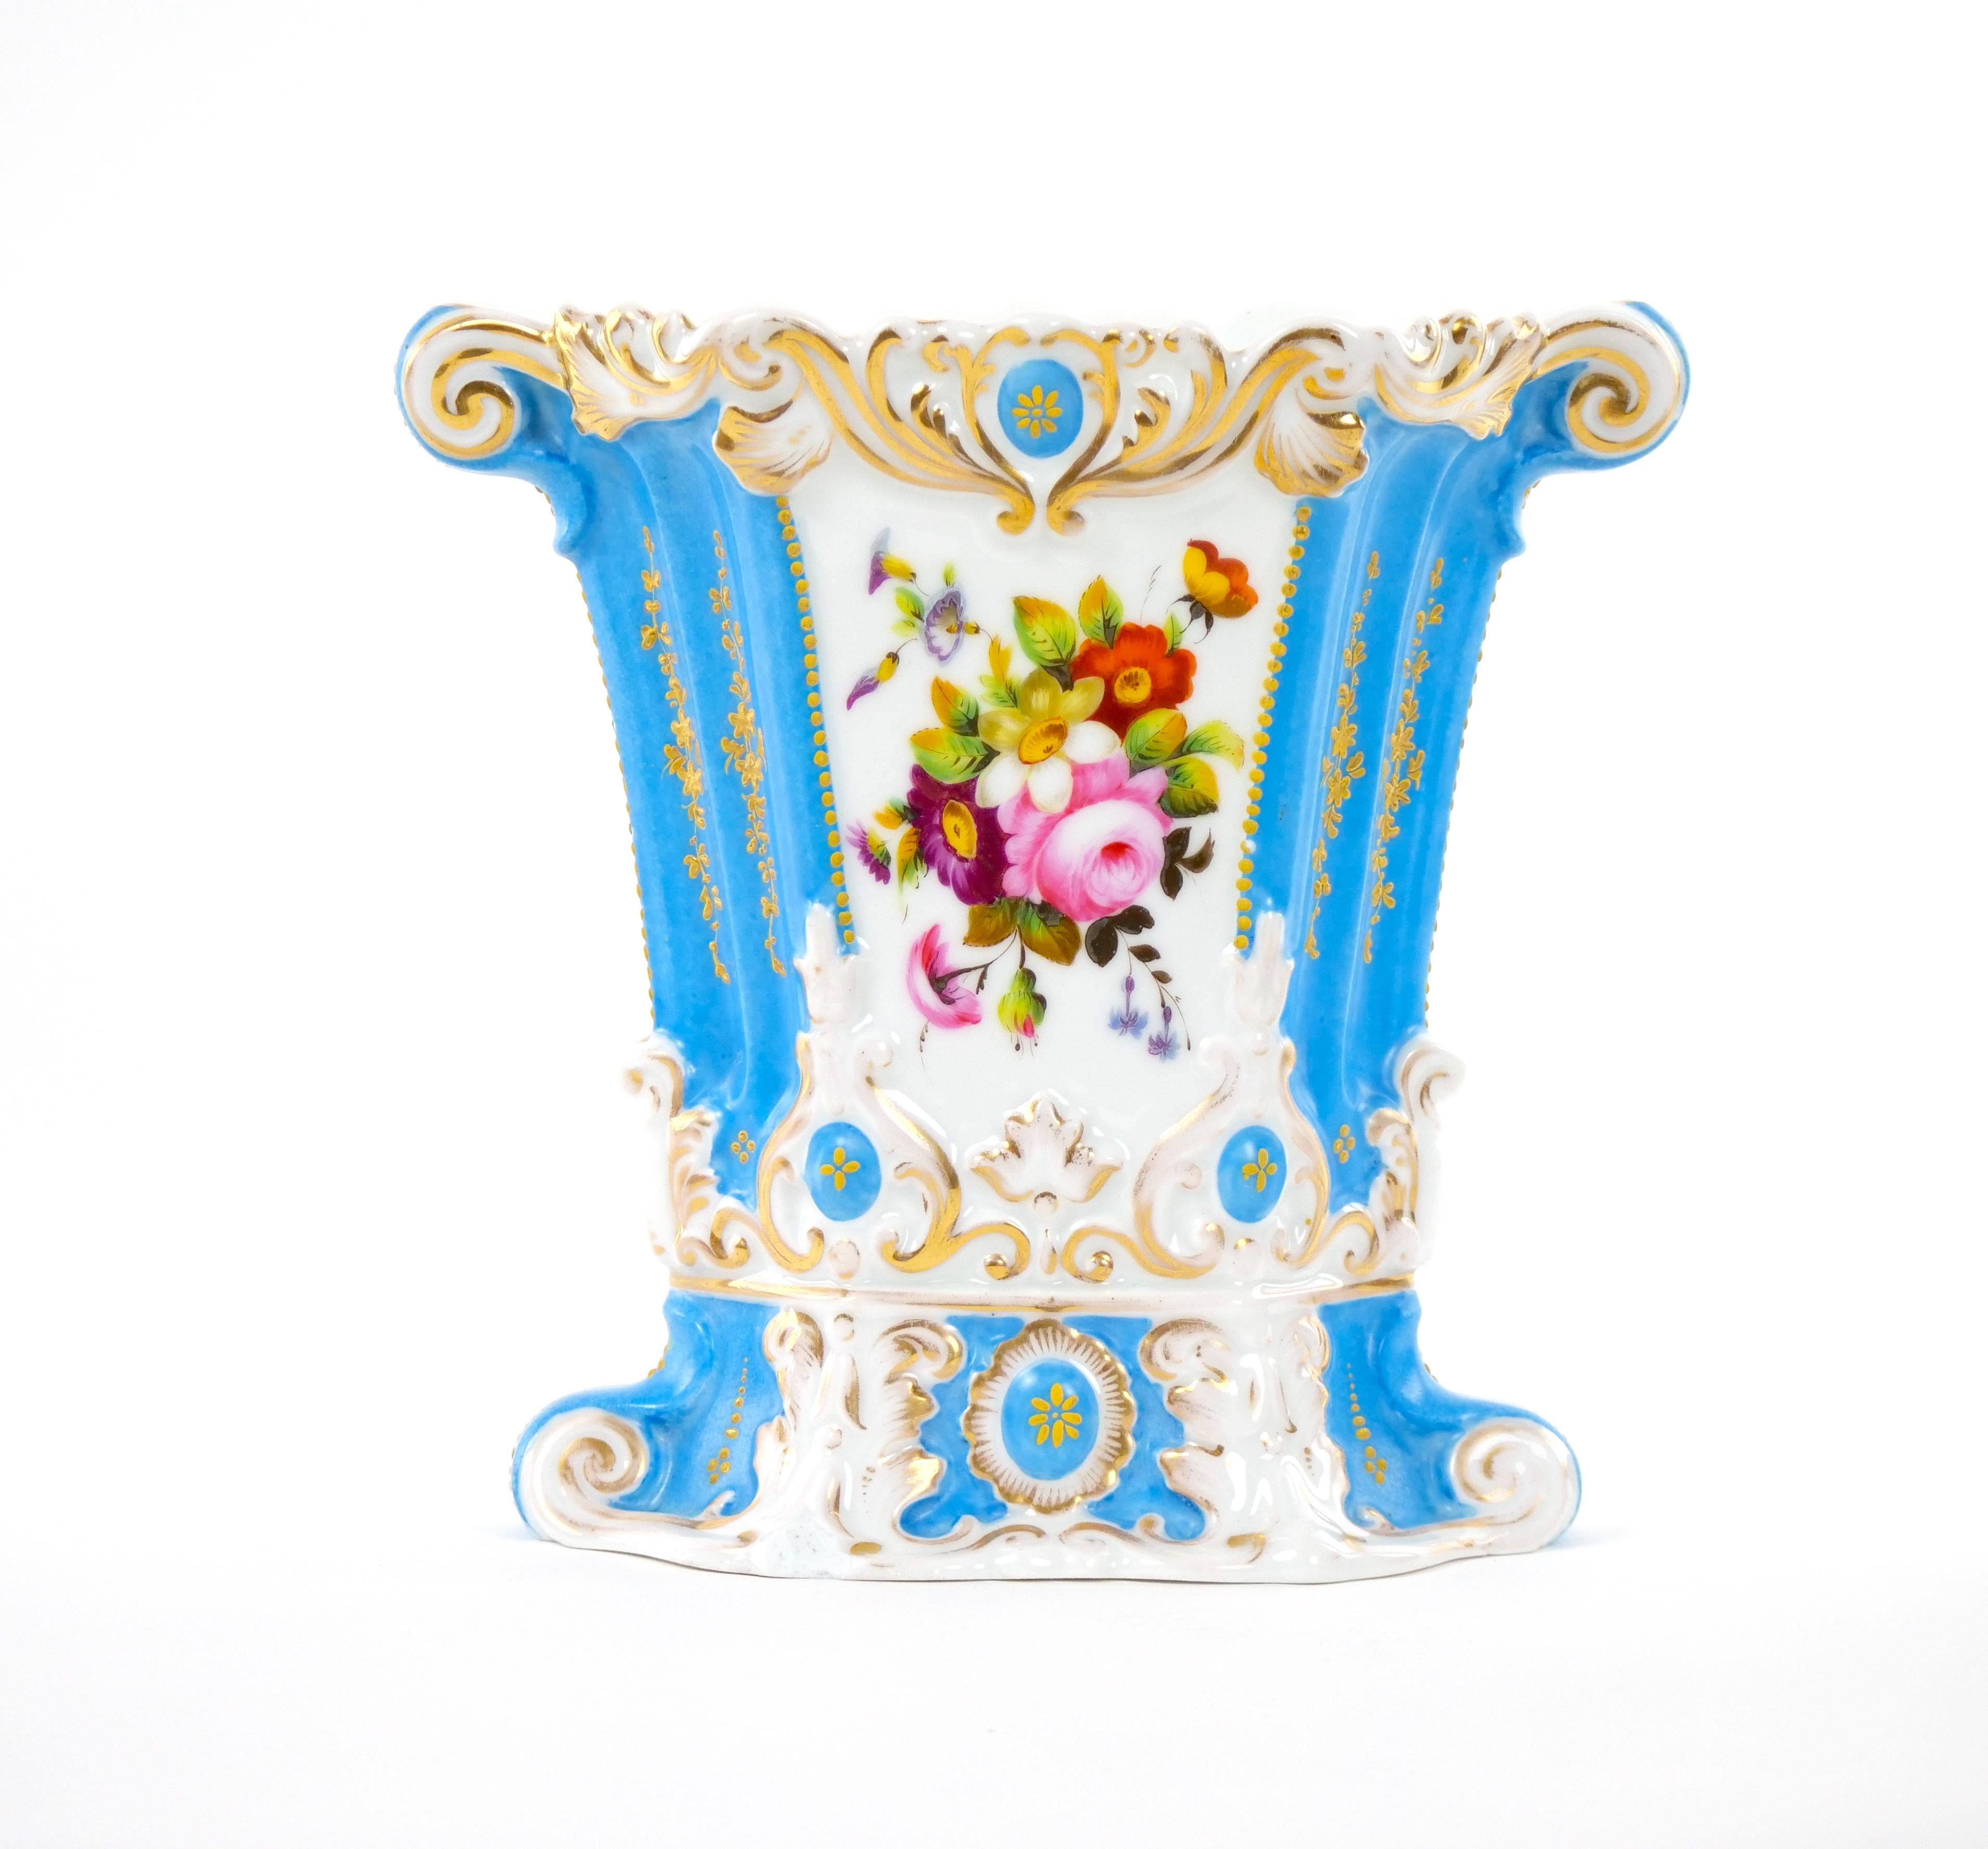 
Découvrez l'attrait d'une époque révolue avec ce vase en porcelaine ancienne de Paris, peint à la main et décoré de dorures, datant du début du 20e siècle. Plongez dans la riche histoire et l'artisanat artistique qu'incarne cette pièce remarquable.